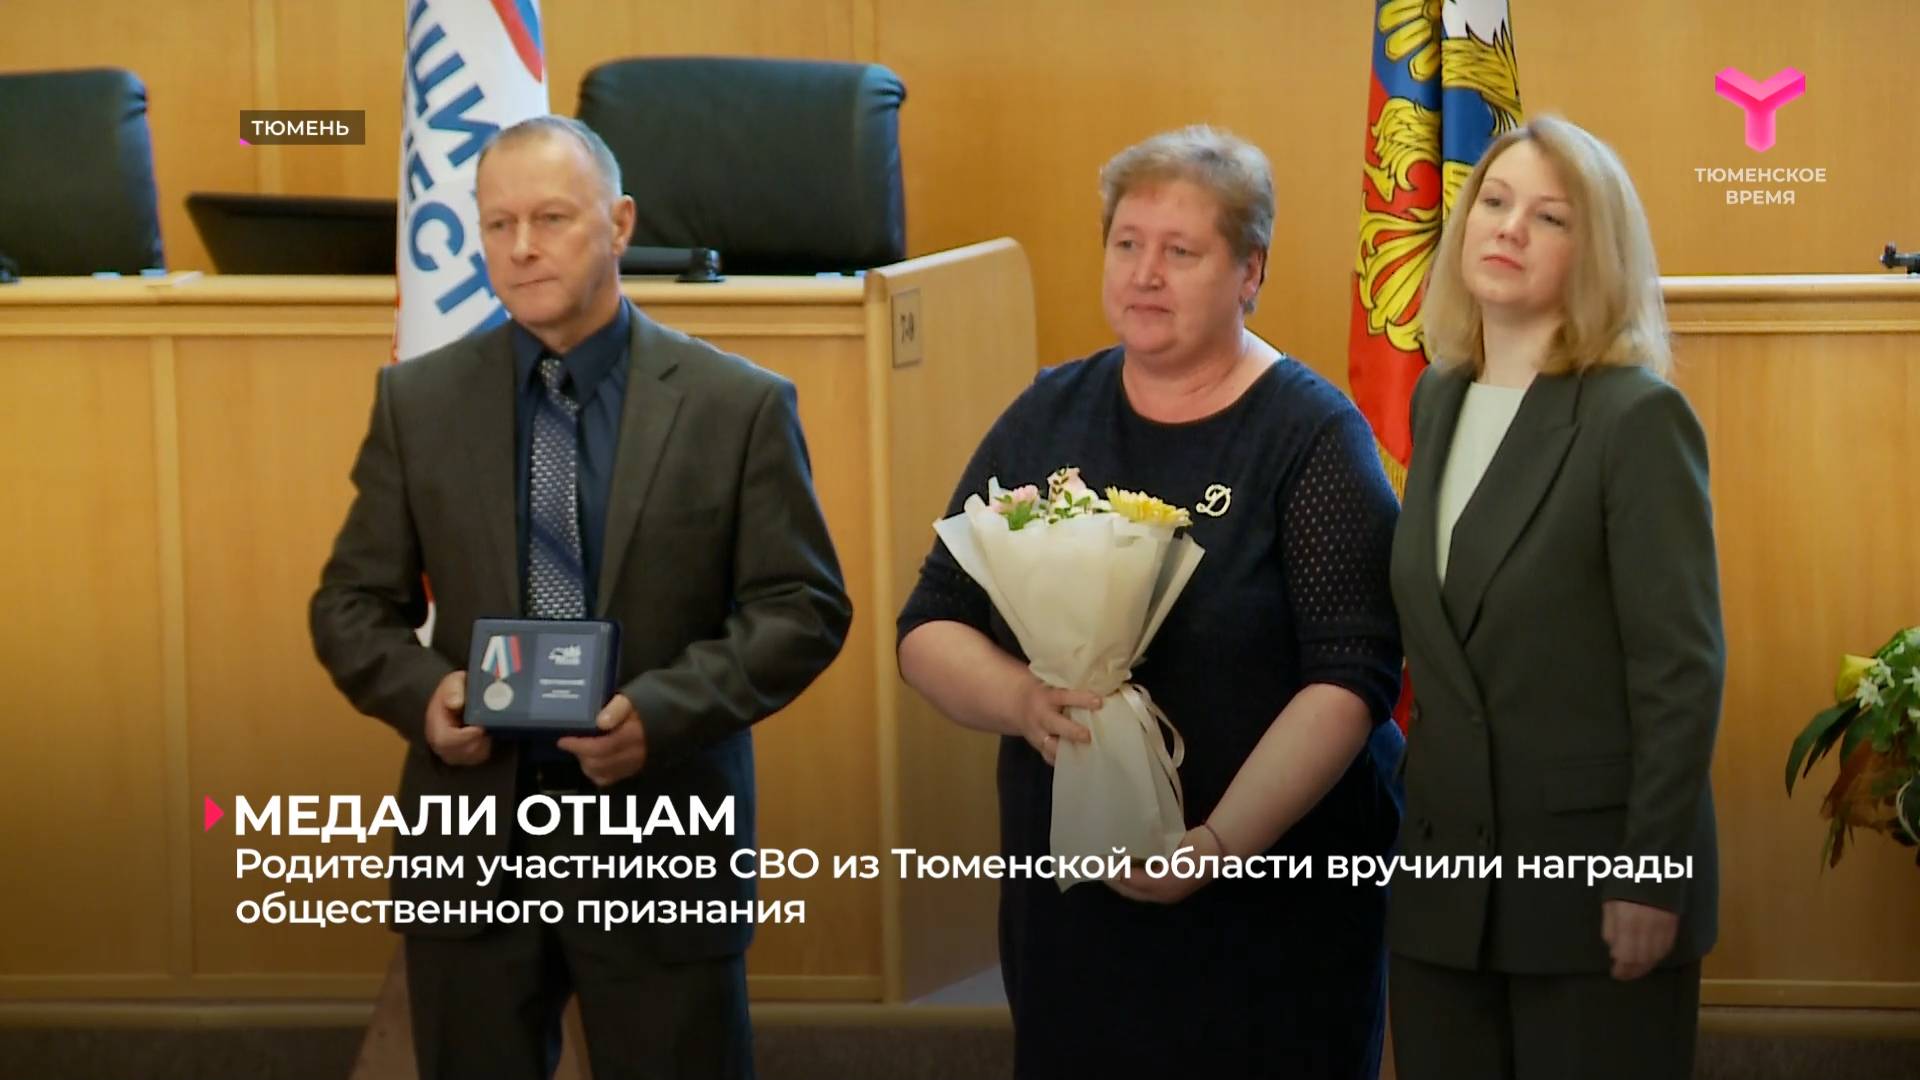 Родителям участников СВО из Тюменской области вручили награды общественного признания